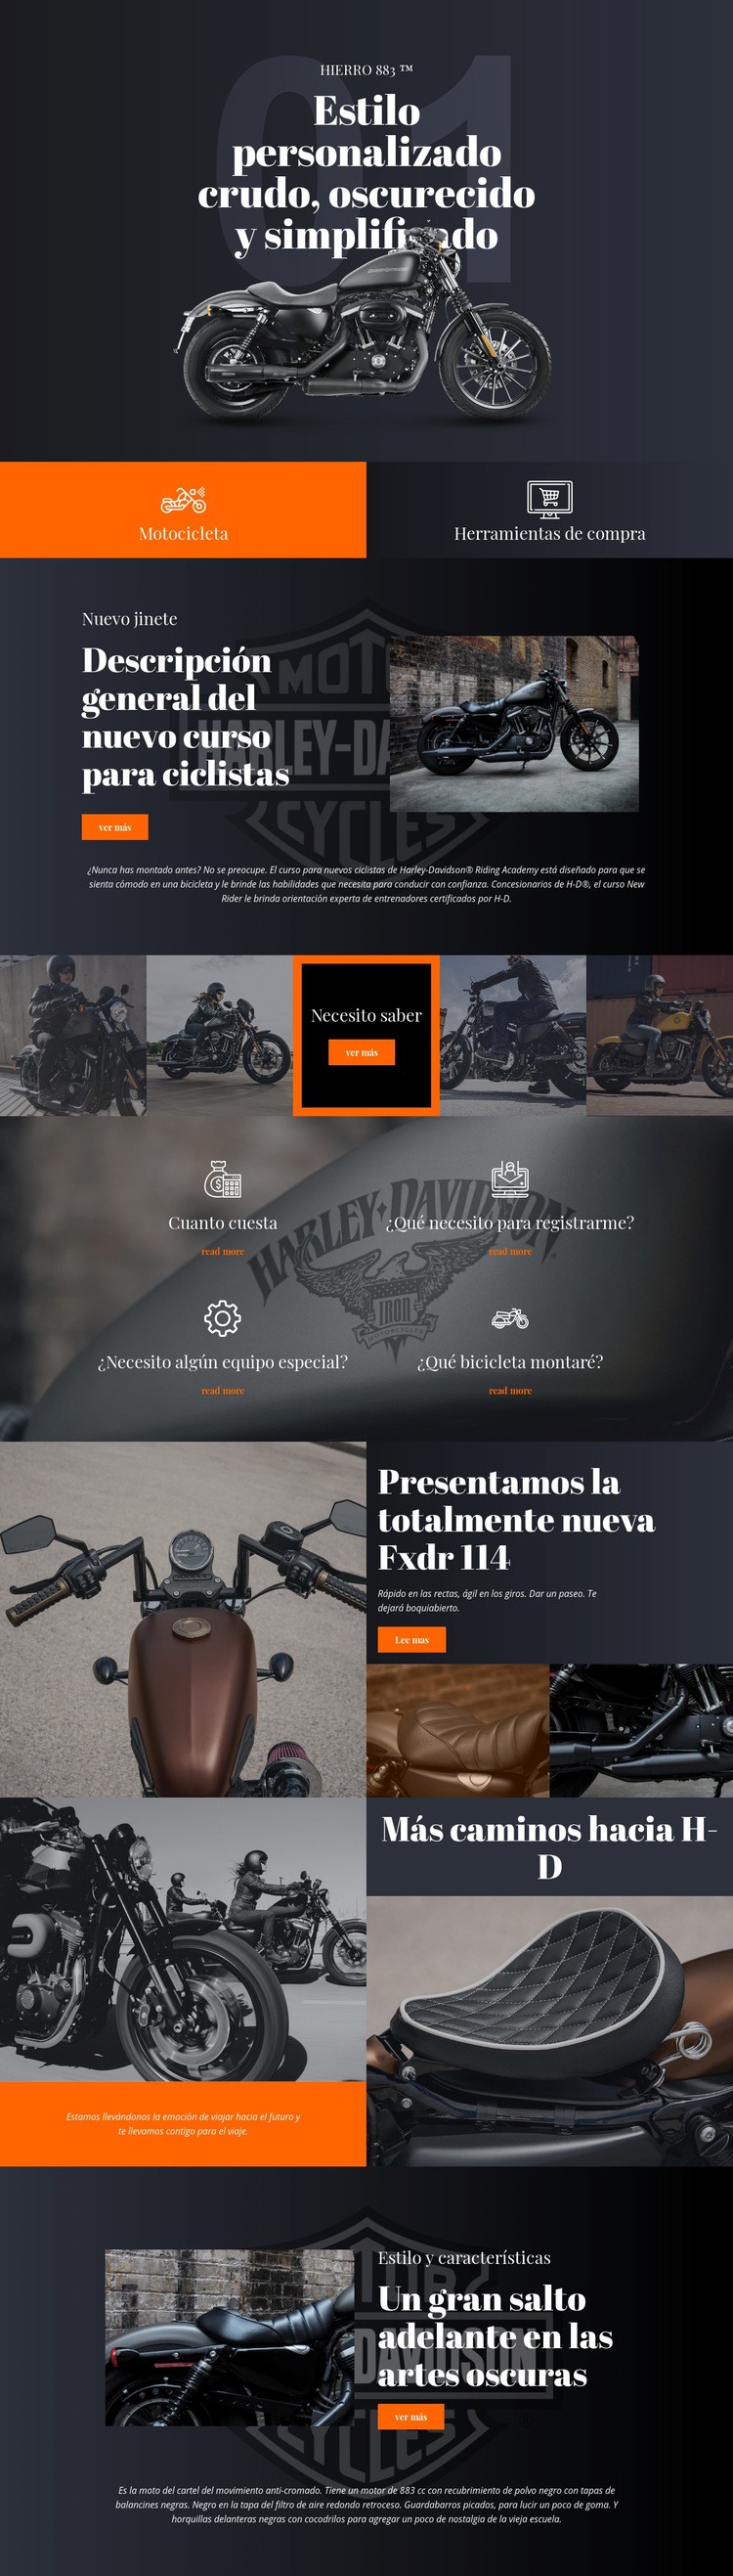 Harley Davidson Plantillas de creación de sitios web